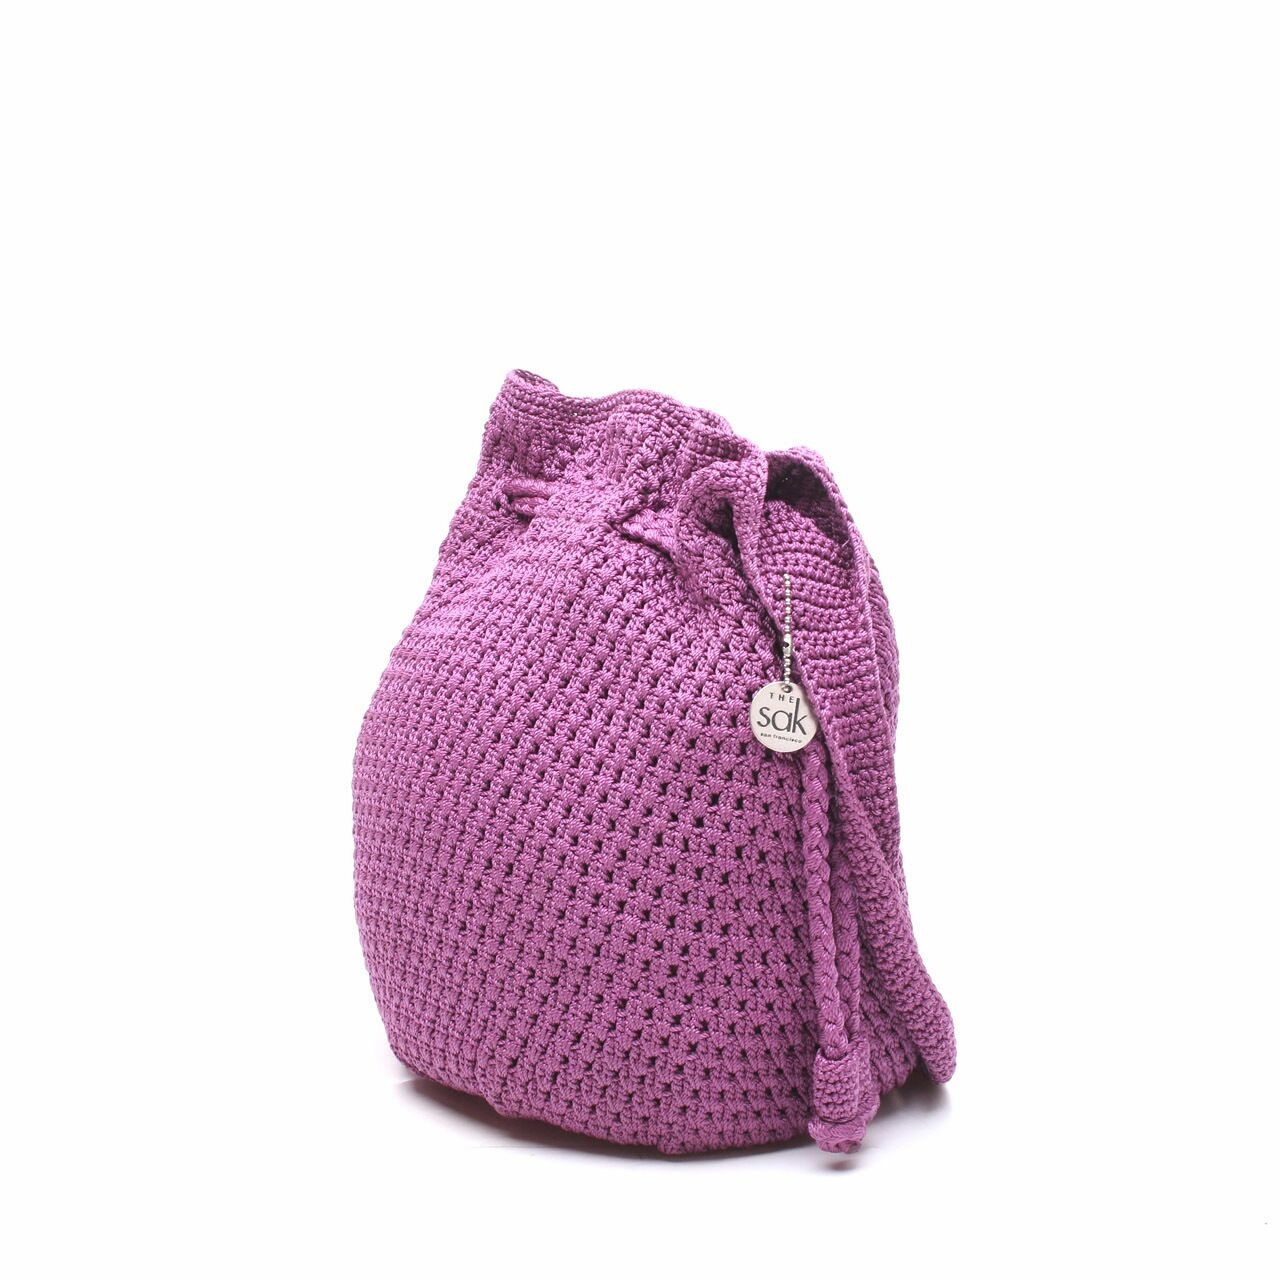 The Sak Purple Knit Shoulder Bag